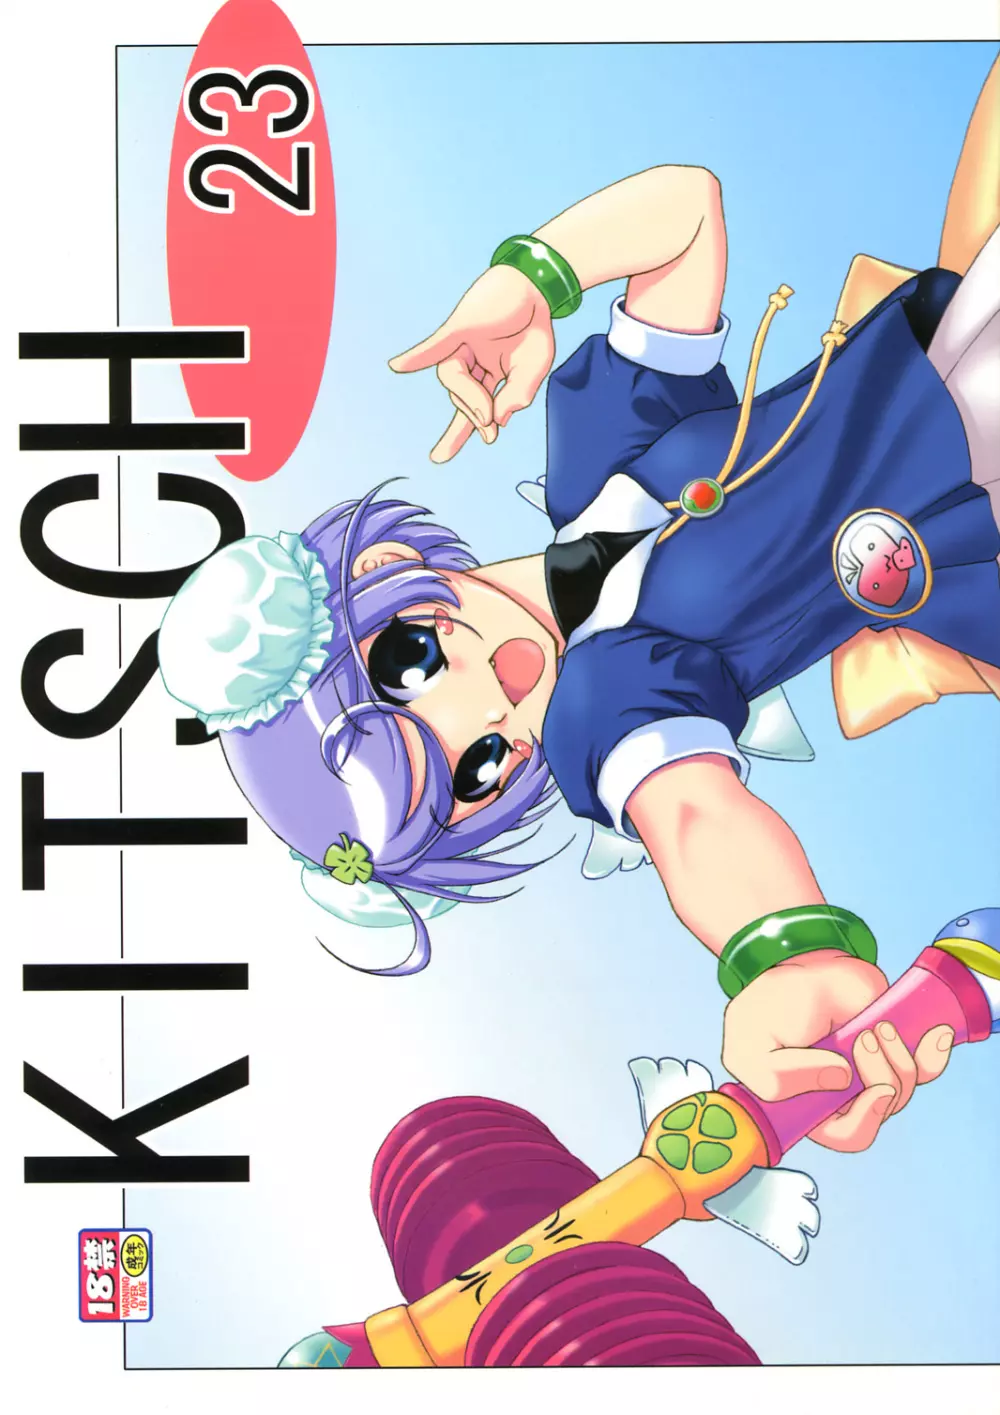 KITSCH 23th Issue